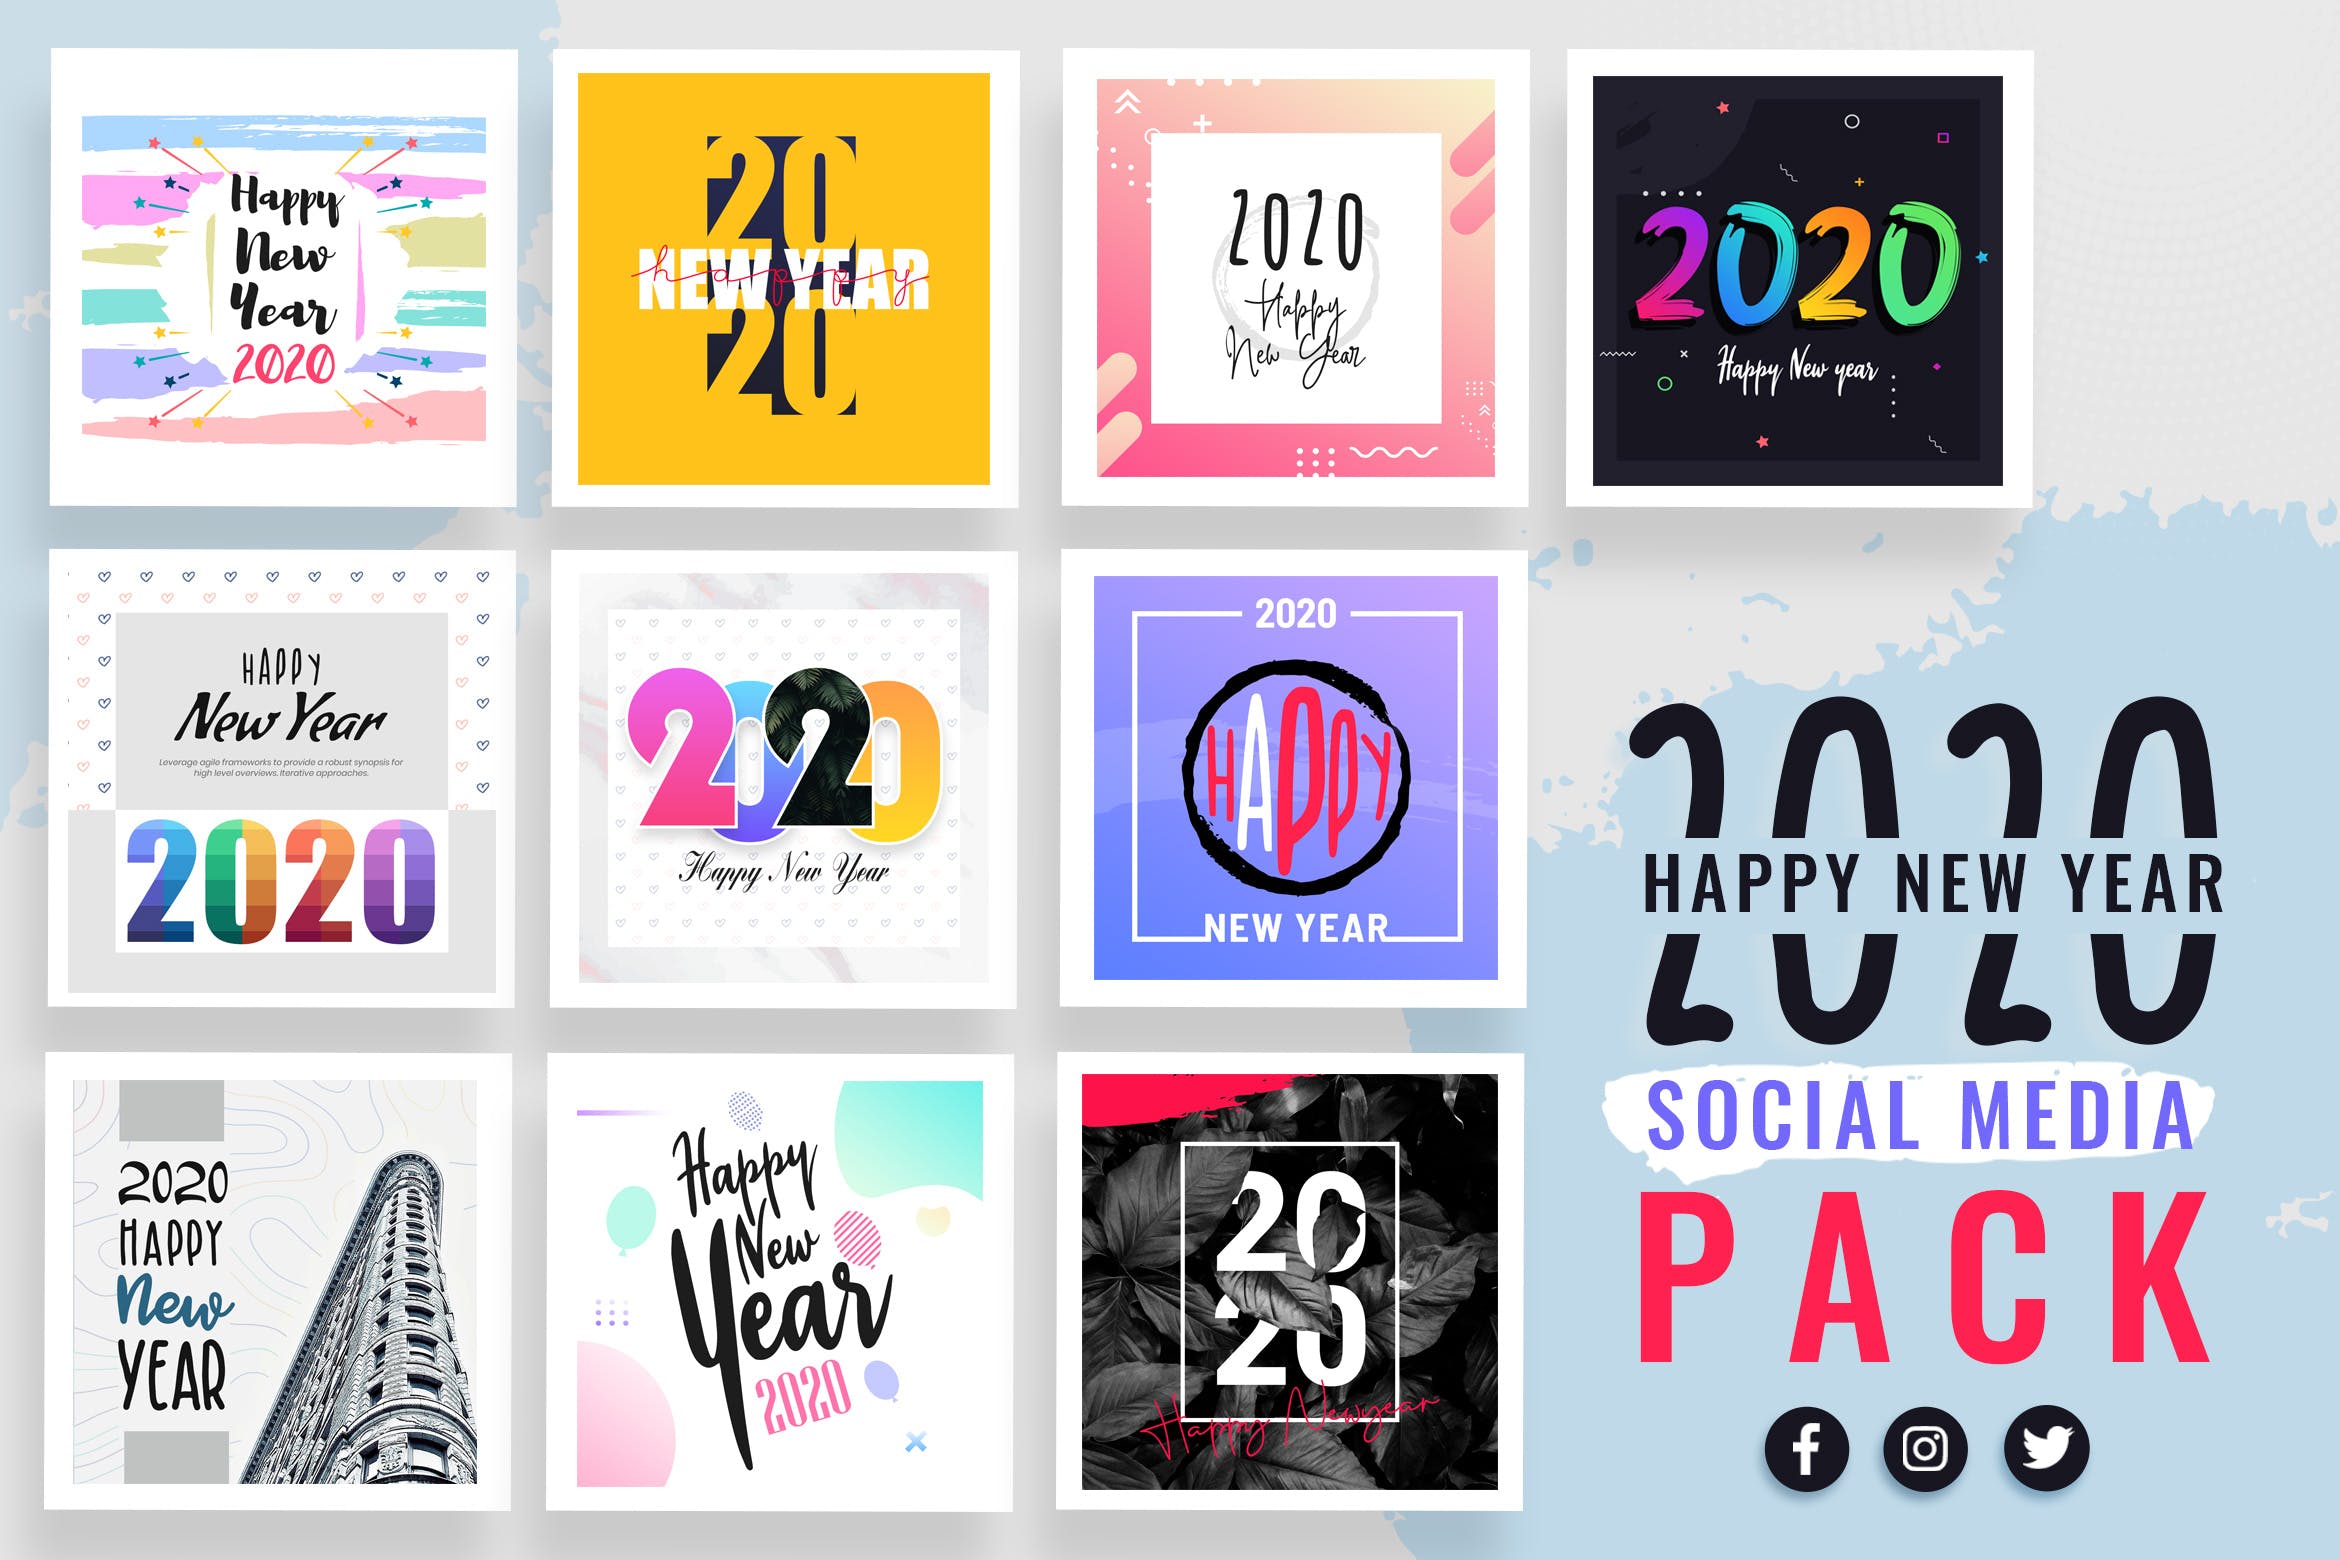 2020年新年主题社交媒体贴图设计模板蚂蚁素材精选合集 New Year Social Media Templates 2020插图